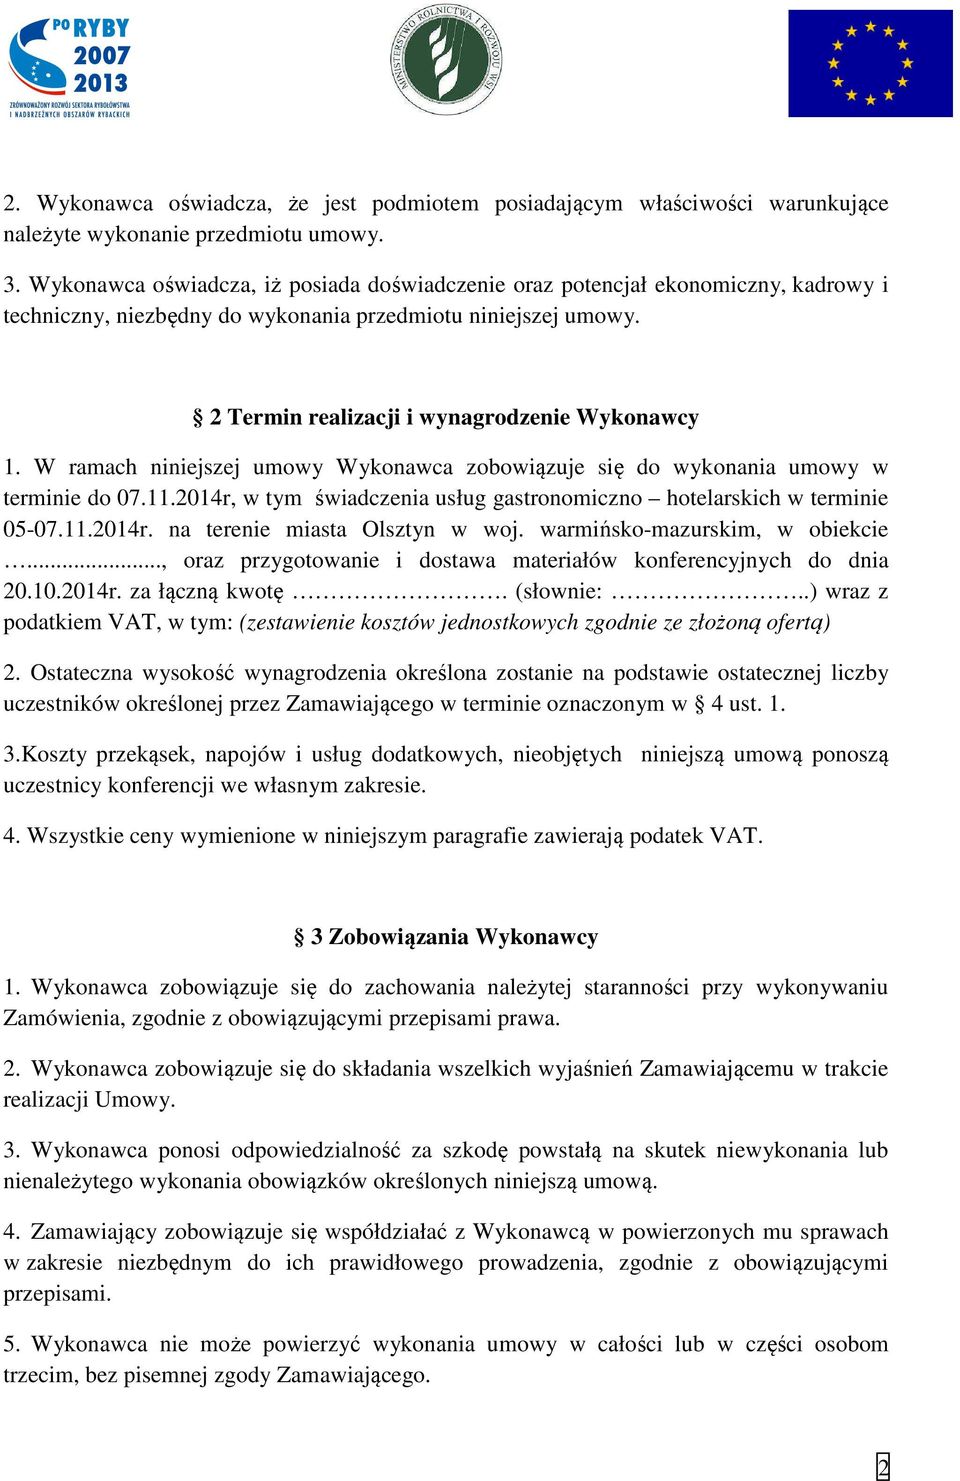 W ramach niniejszej umowy Wykonawca zobowiązuje się do wykonania umowy w terminie do 07.11.2014r, w tym świadczenia usług gastronomiczno hotelarskich w terminie 05-07.11.2014r. na terenie miasta Olsztyn w woj.